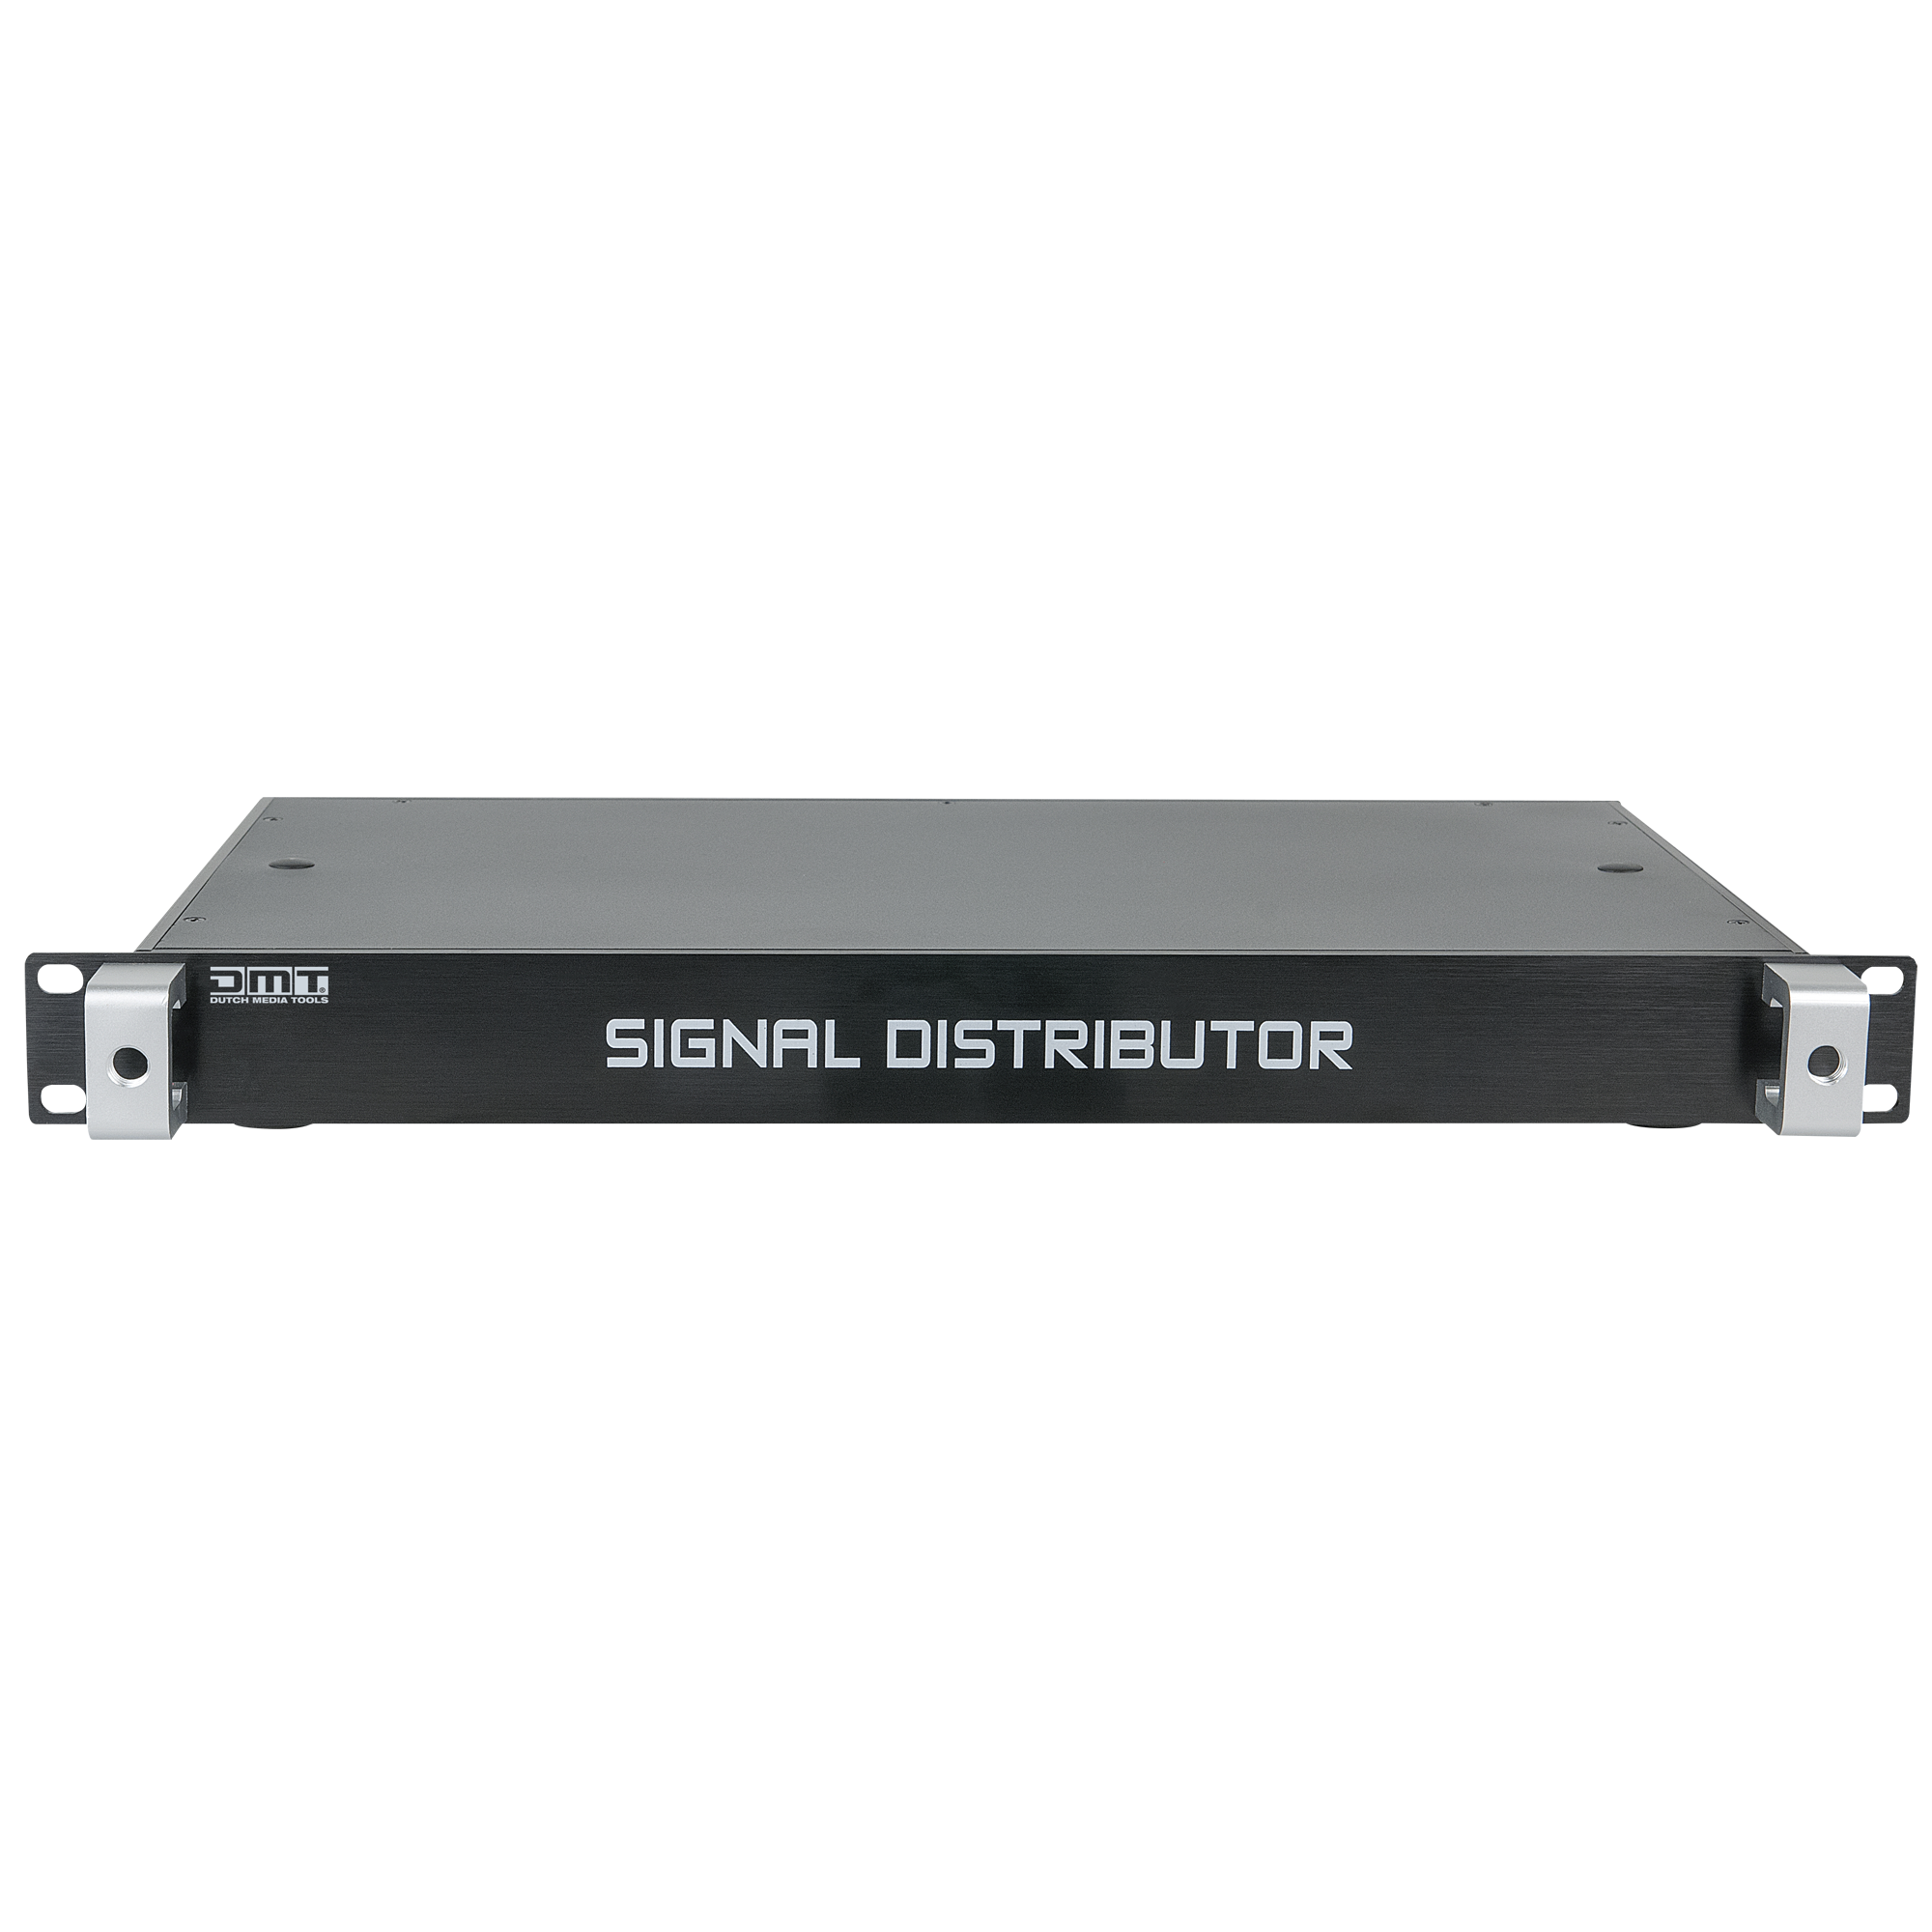 SD-8 Signaldistributor for Pixelscreen/Mesh - Onlinediscowinkel.nl